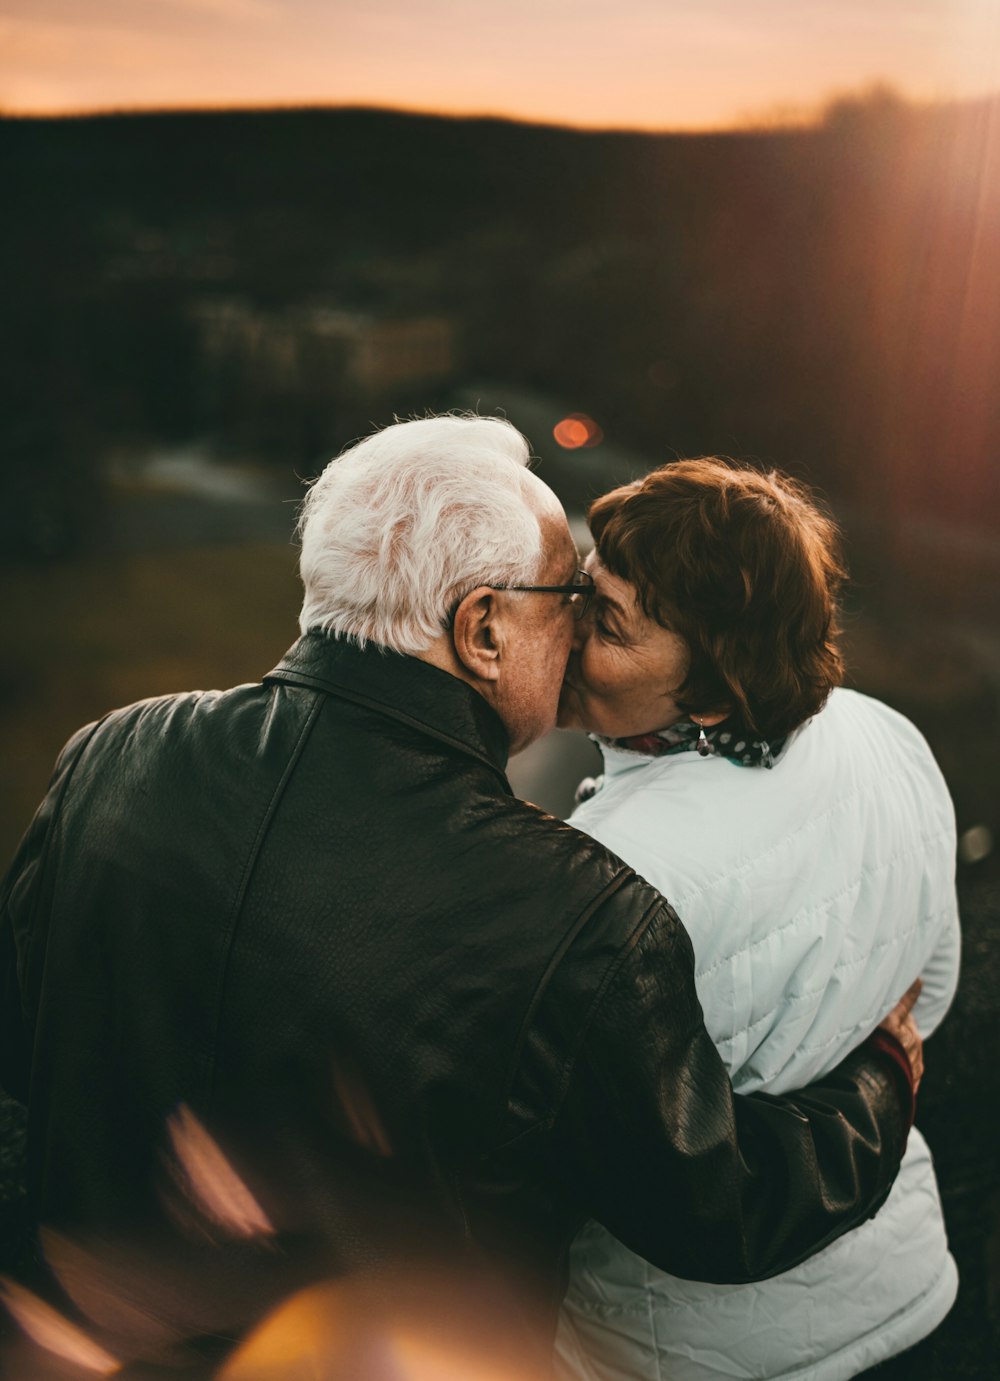 photographie de mise au point sélective d'un homme et d'une femme s'embrassant